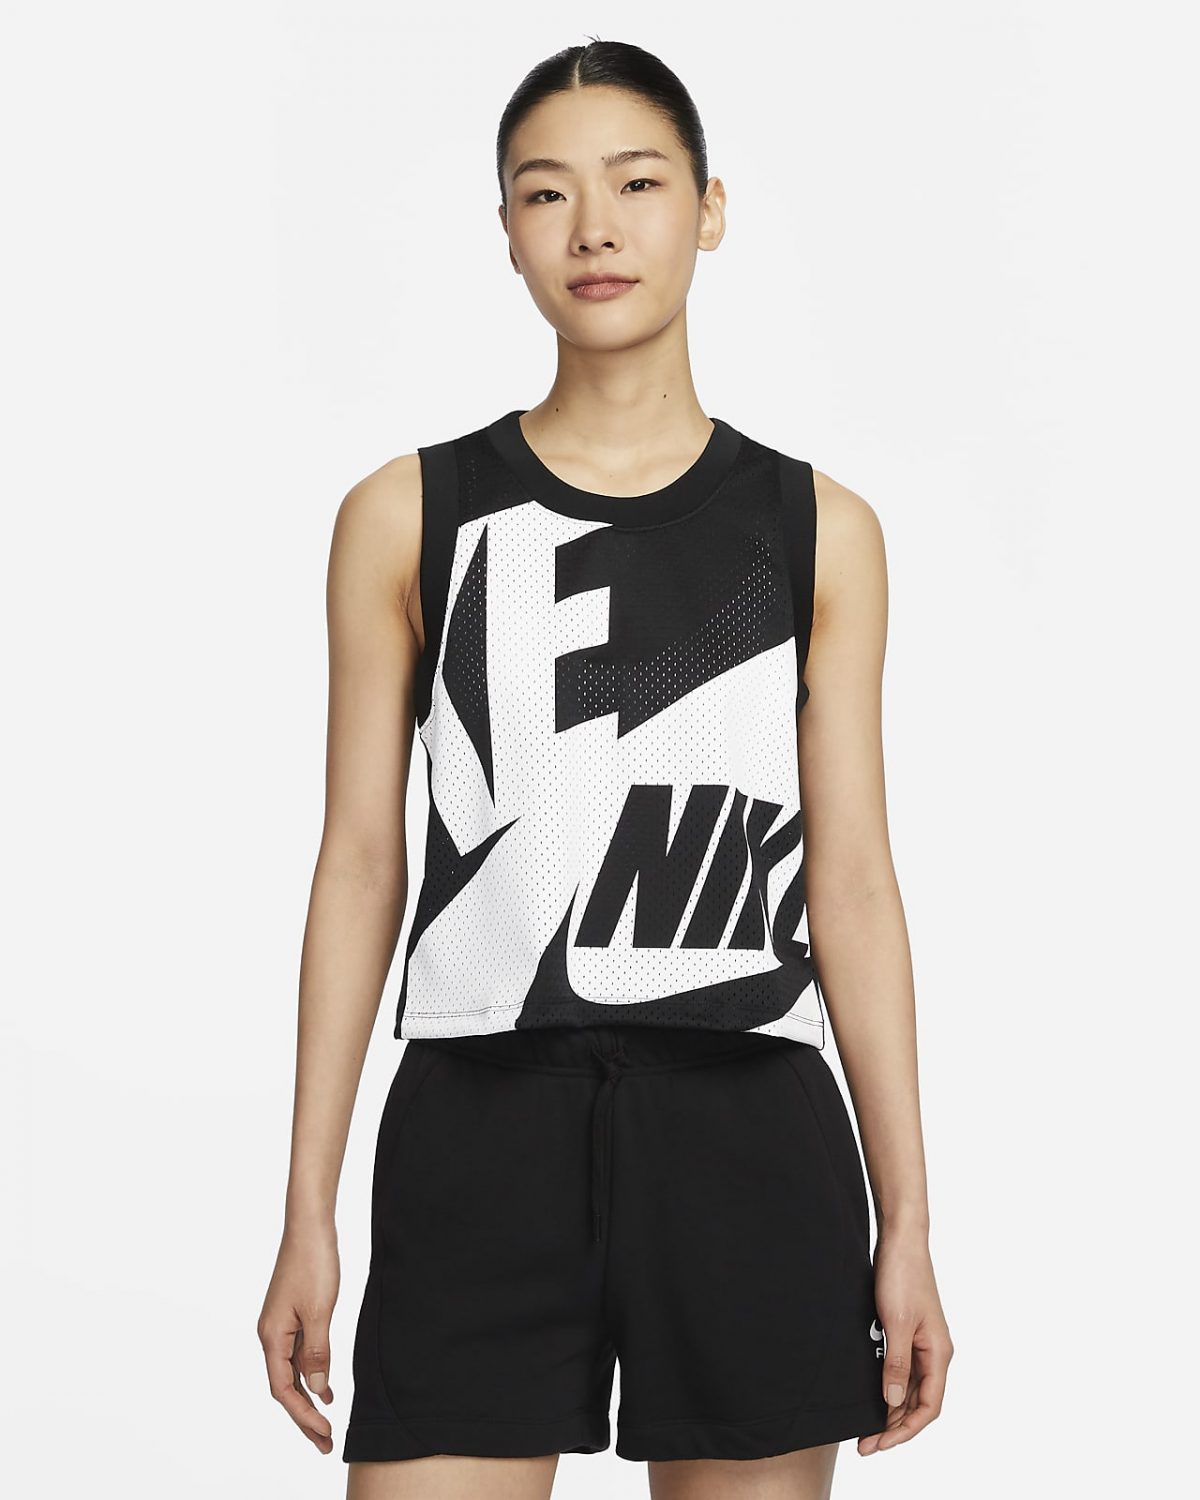 Женская спортивная одежда Nike Air фото